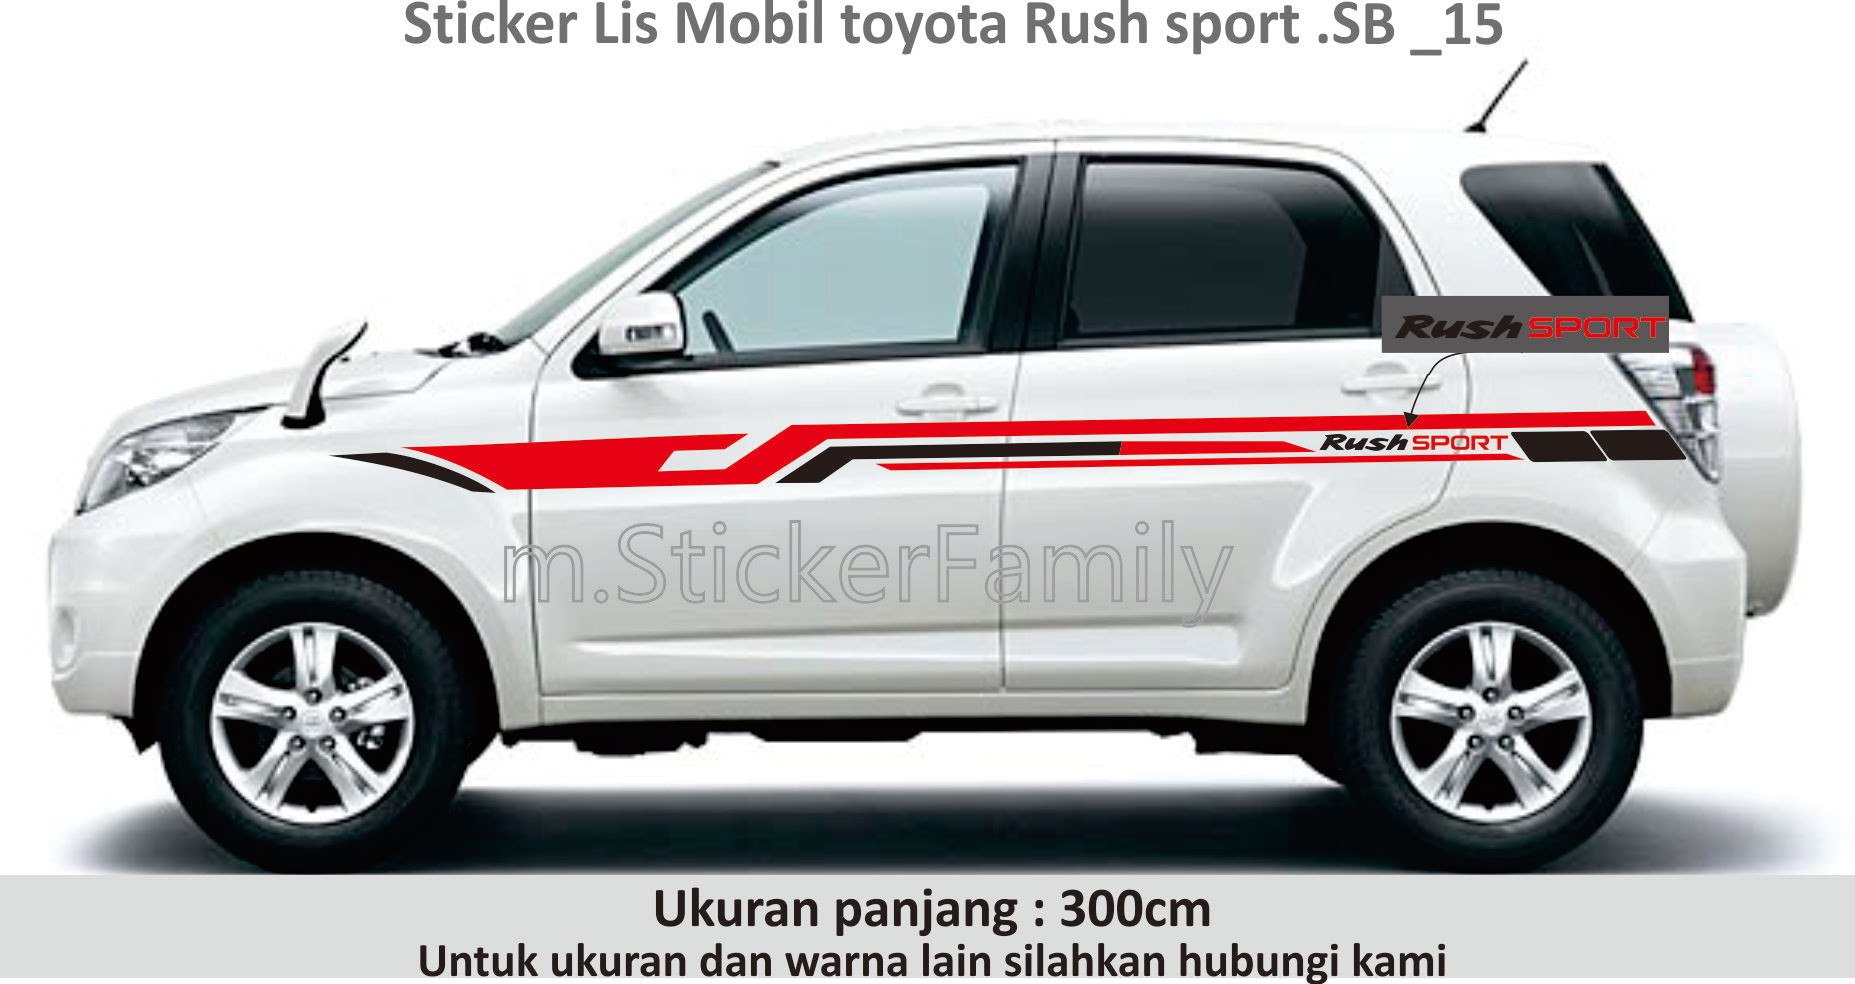 Kumpulan Cutting Sticker Mobil Toyota Rush Terlengkap 